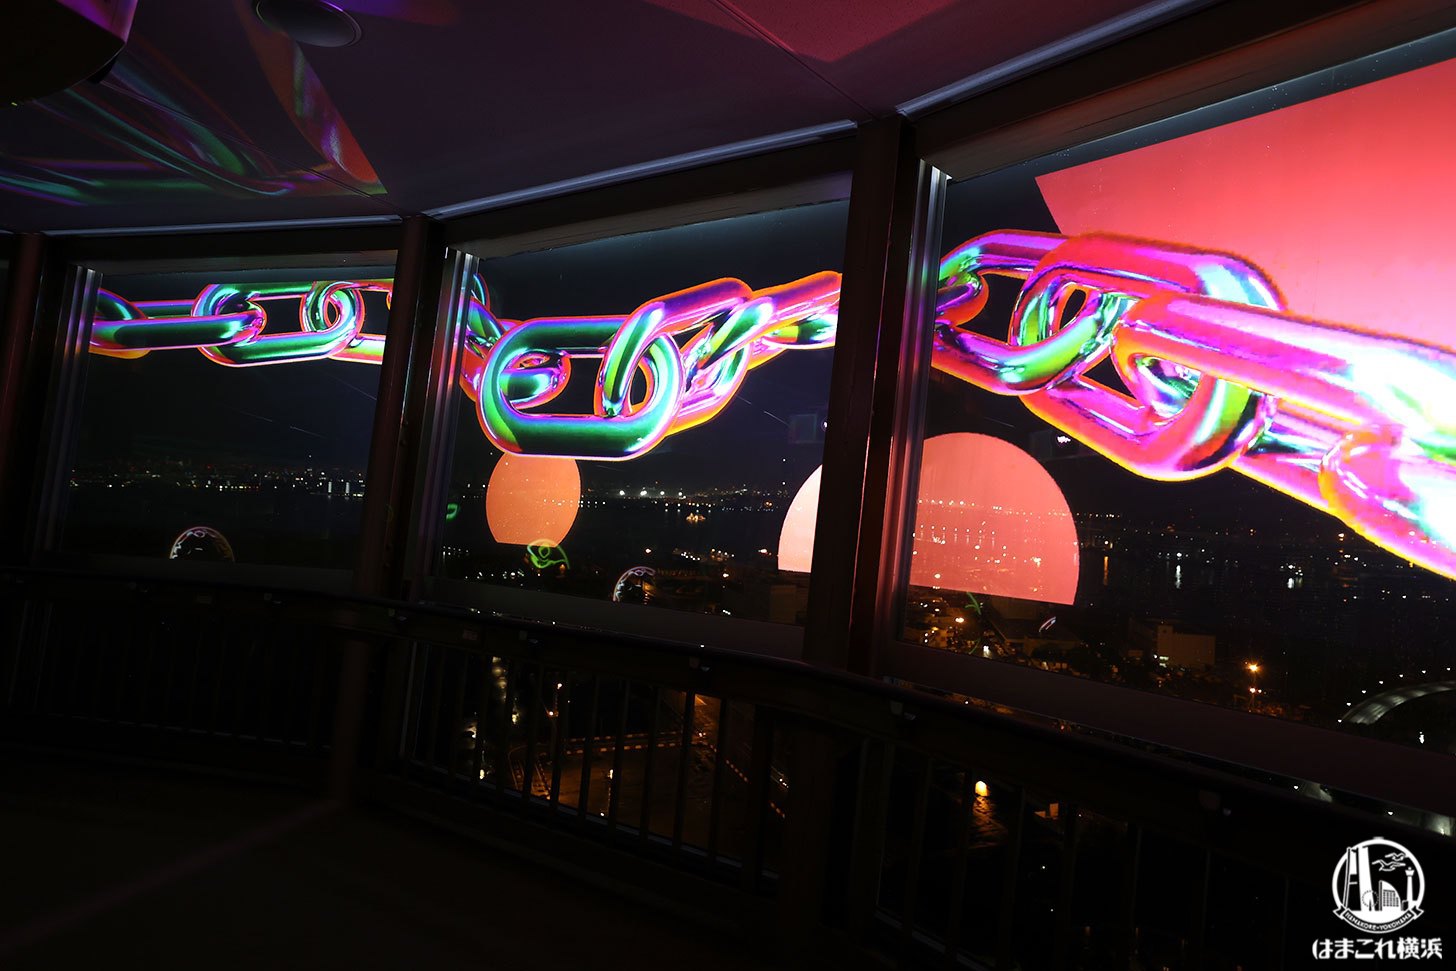 30階の展望フロア「メディアアートギャラリー」